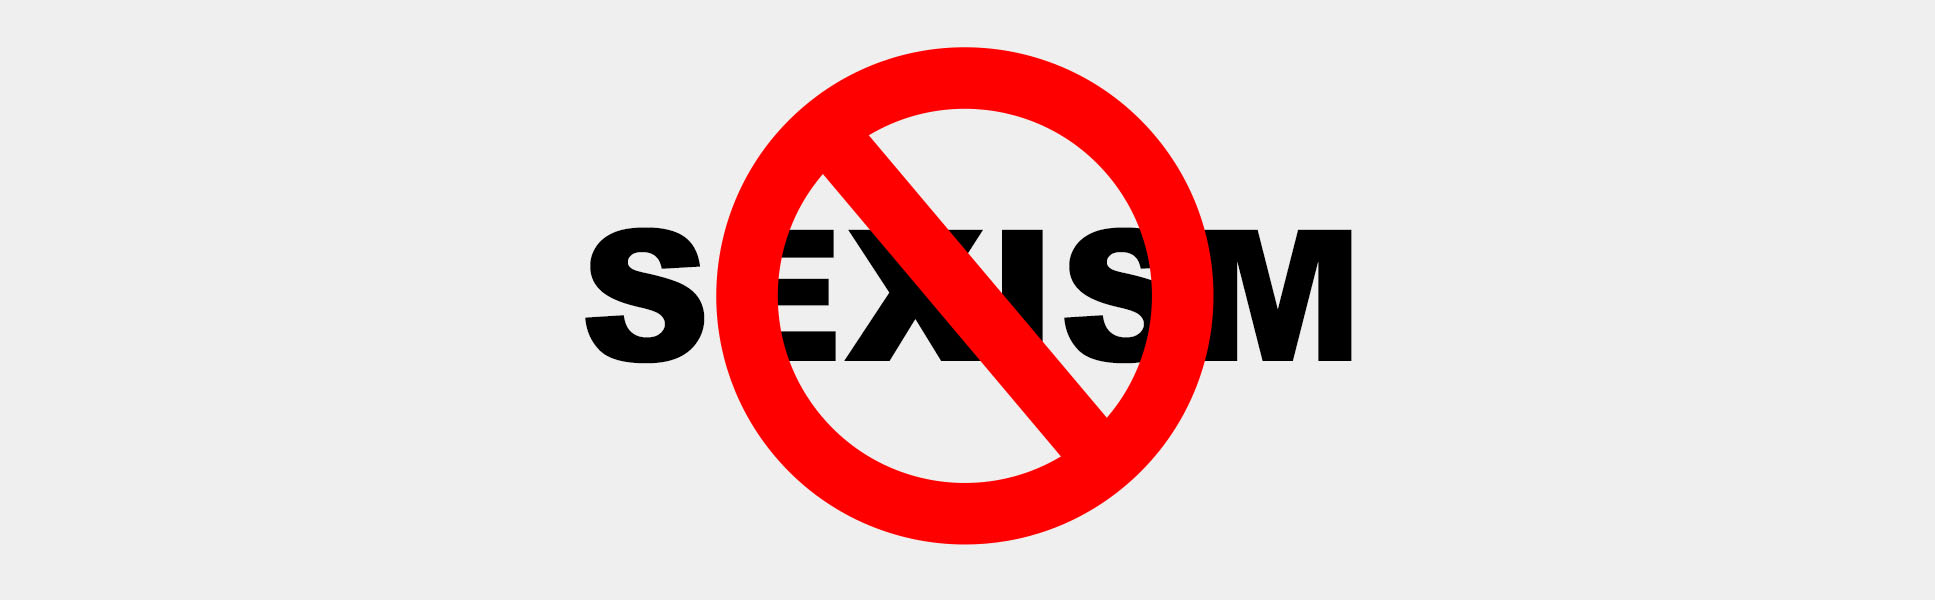 Anti-Sexism